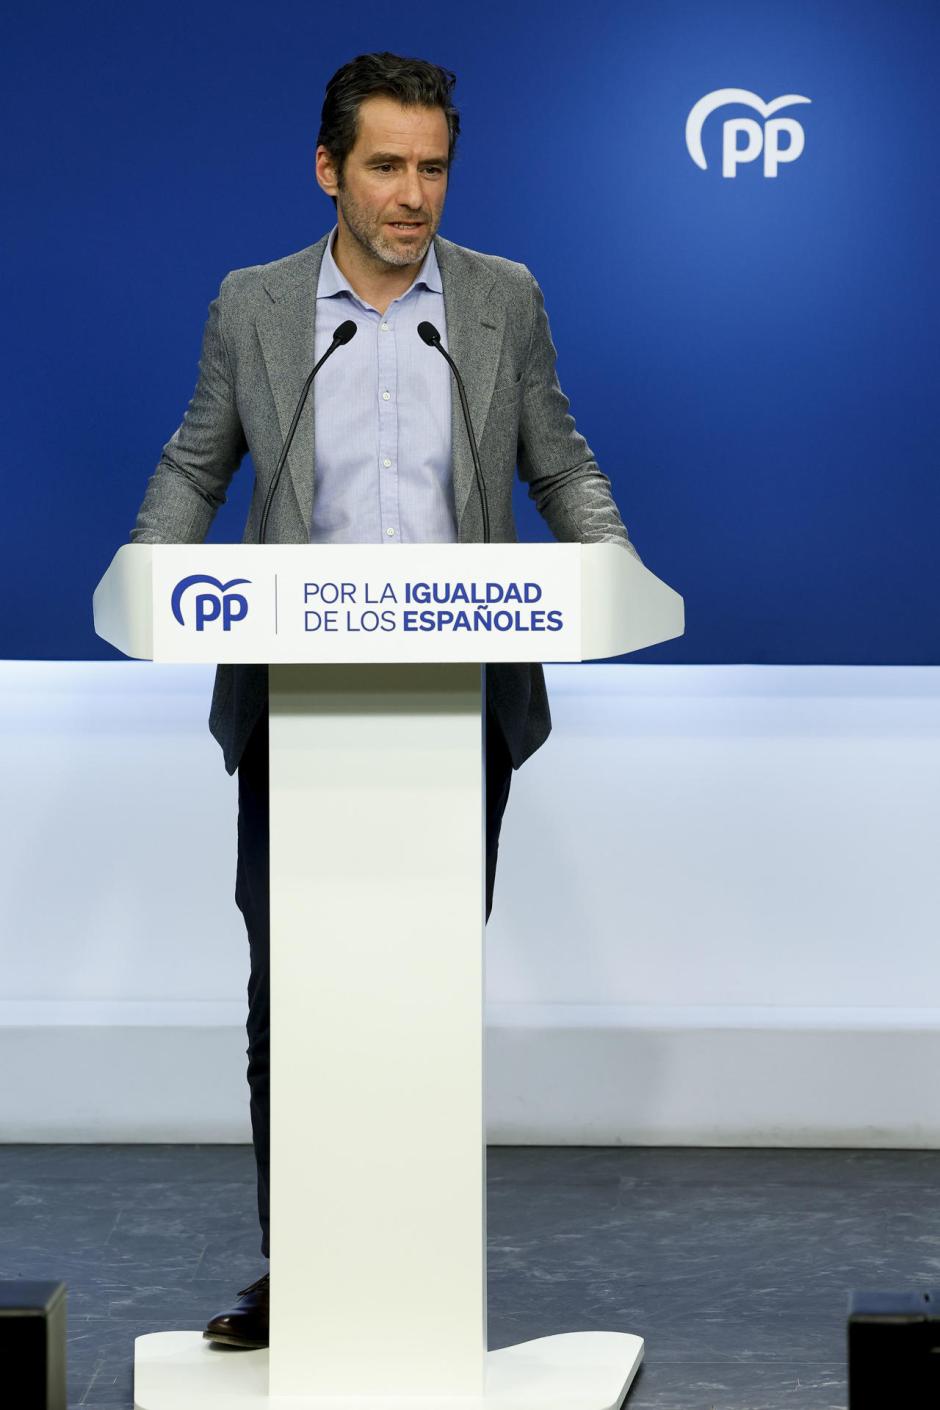 El portavoz nacional del Partido Popular Borja Sémper ofrece una rueda de prensa